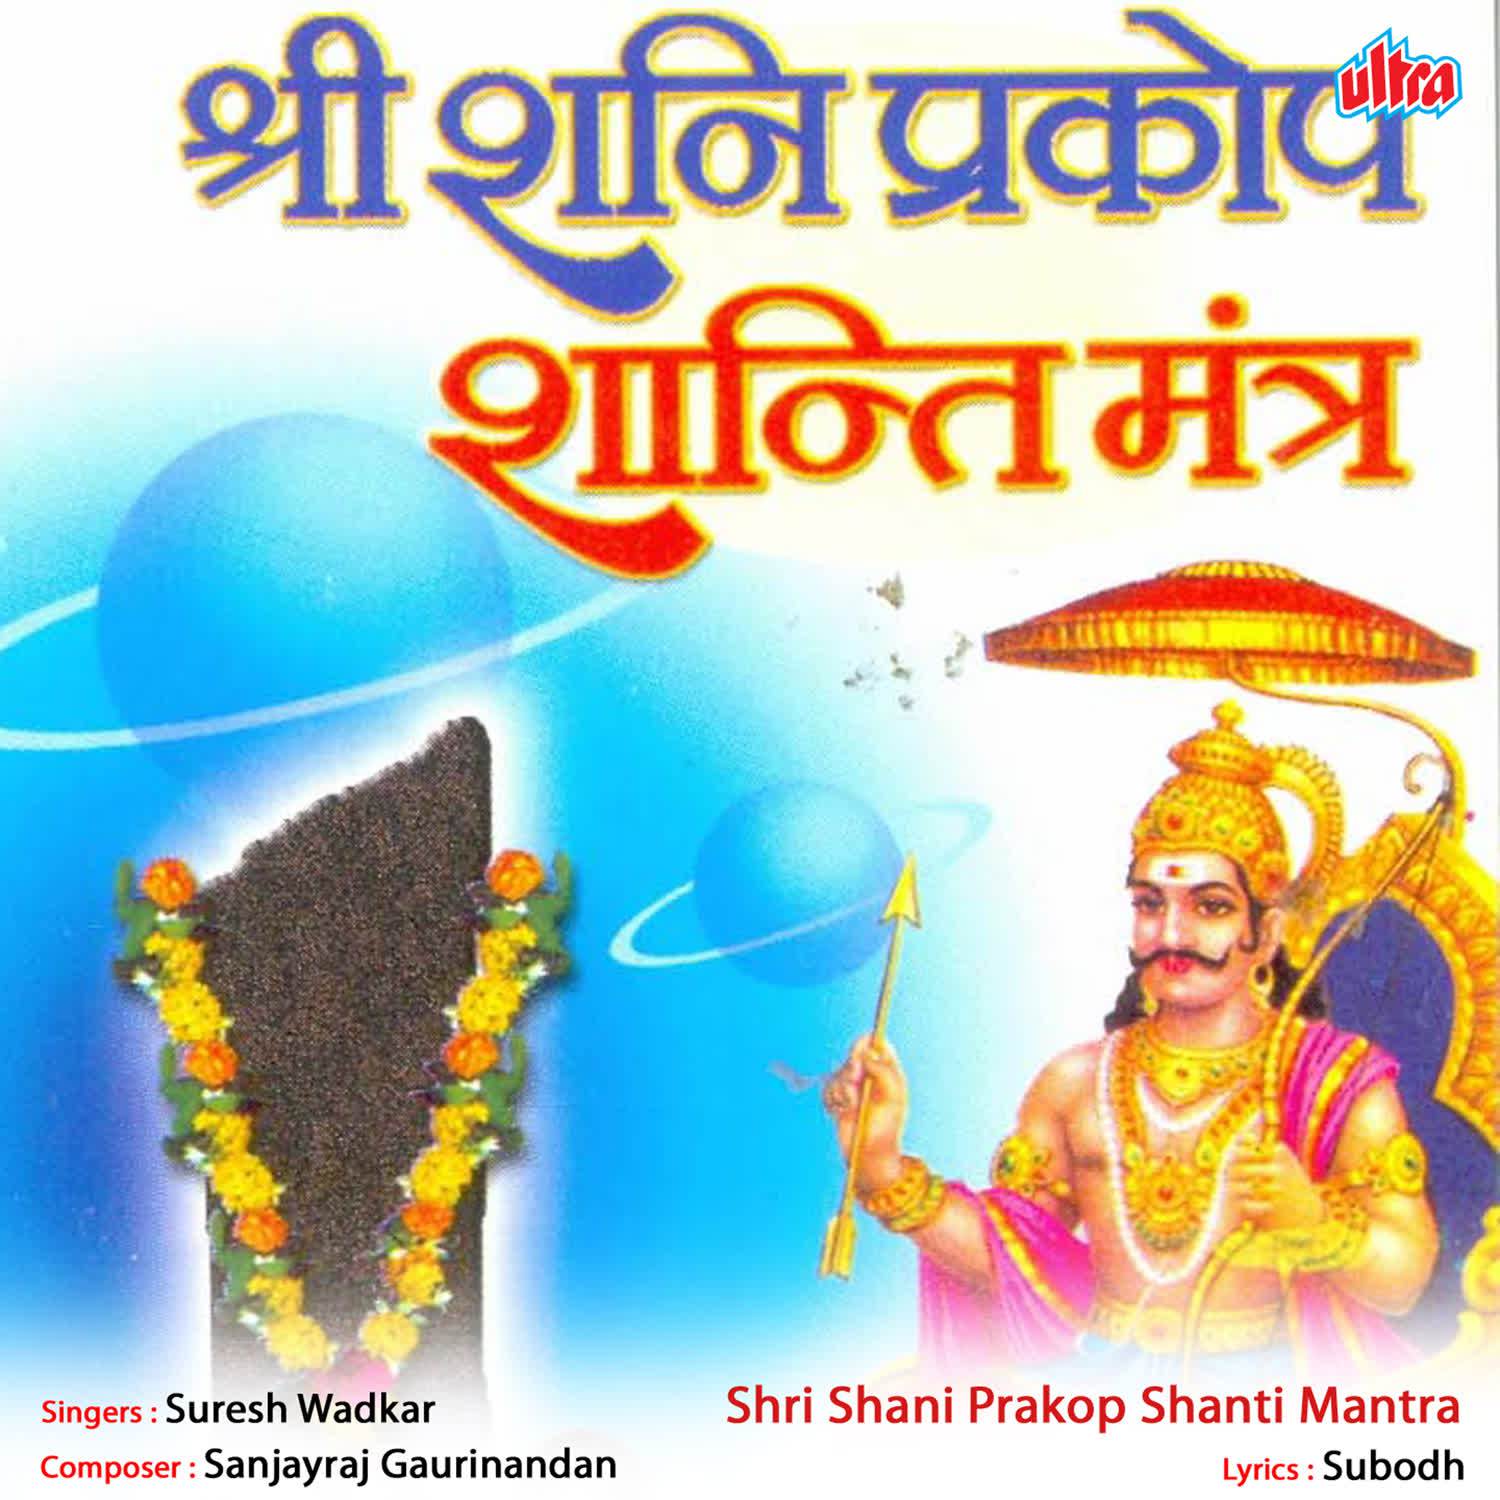 Shri Shani Prakop Shanti Mantra